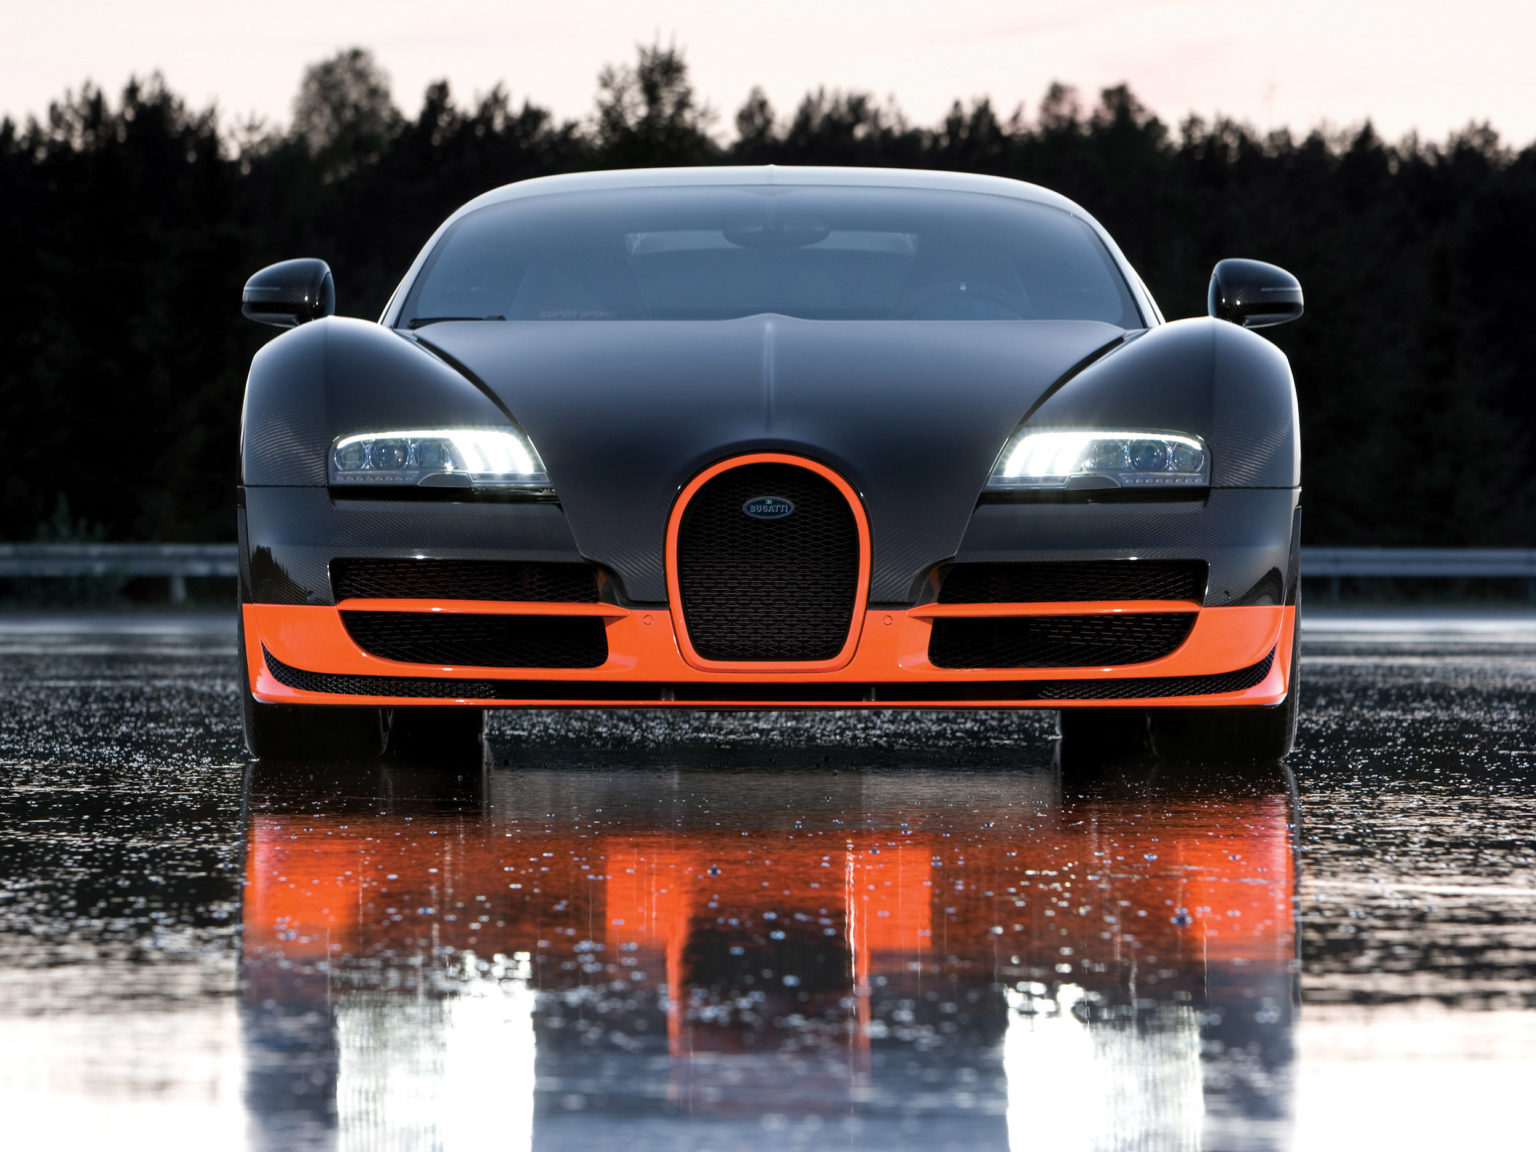 The Bugatti Veyron 16.4 Super Sport is just one of brand Design Director Achim Annscheidt's favorite Bugattis.